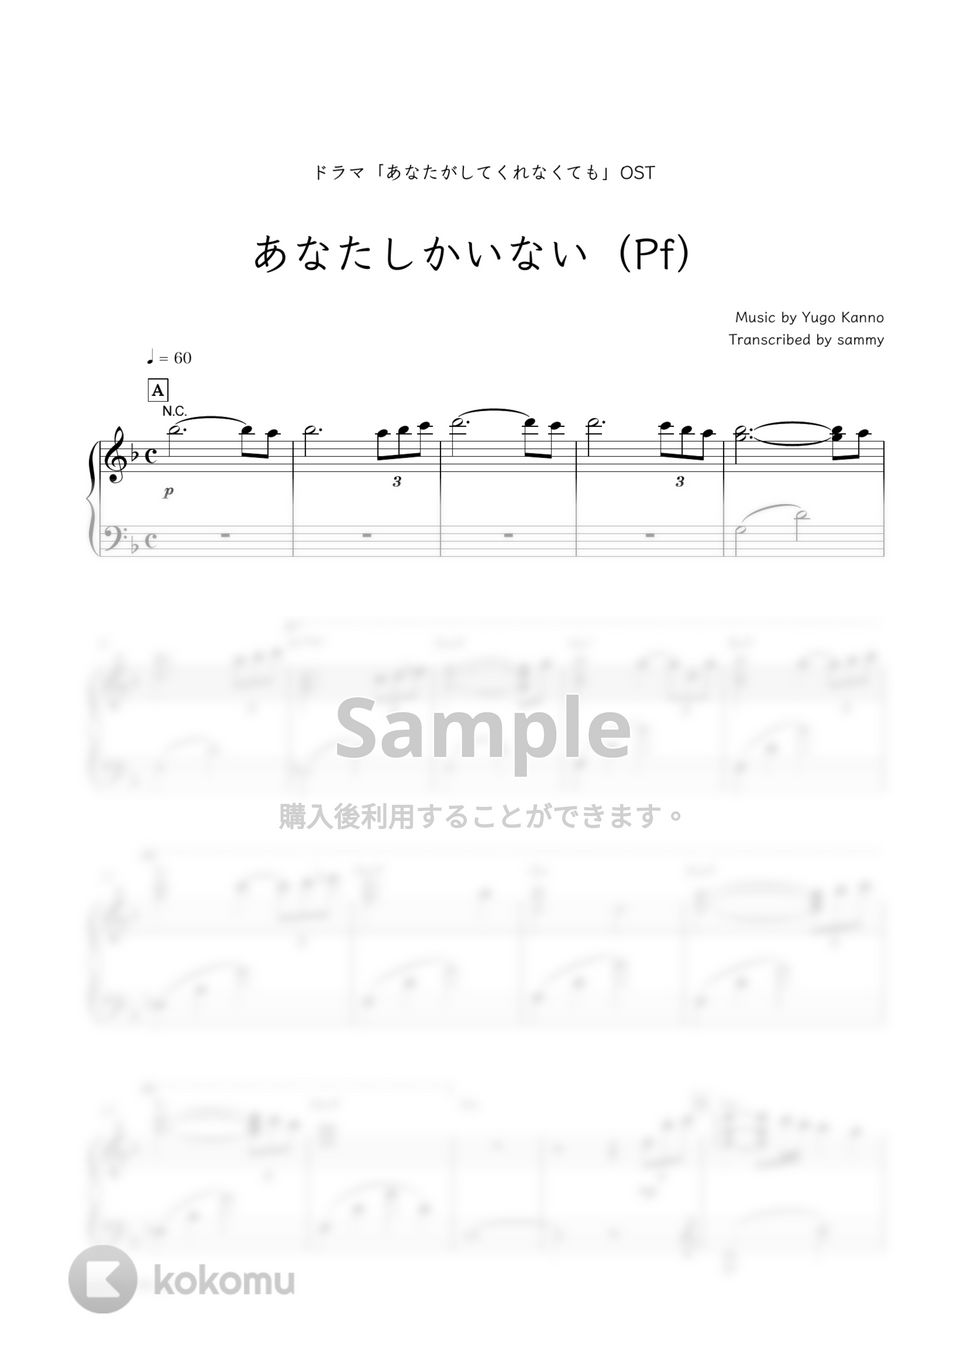 ドラマ『あなたがしてくれなくても』OST - あなたしかいない (Pf) by sammy